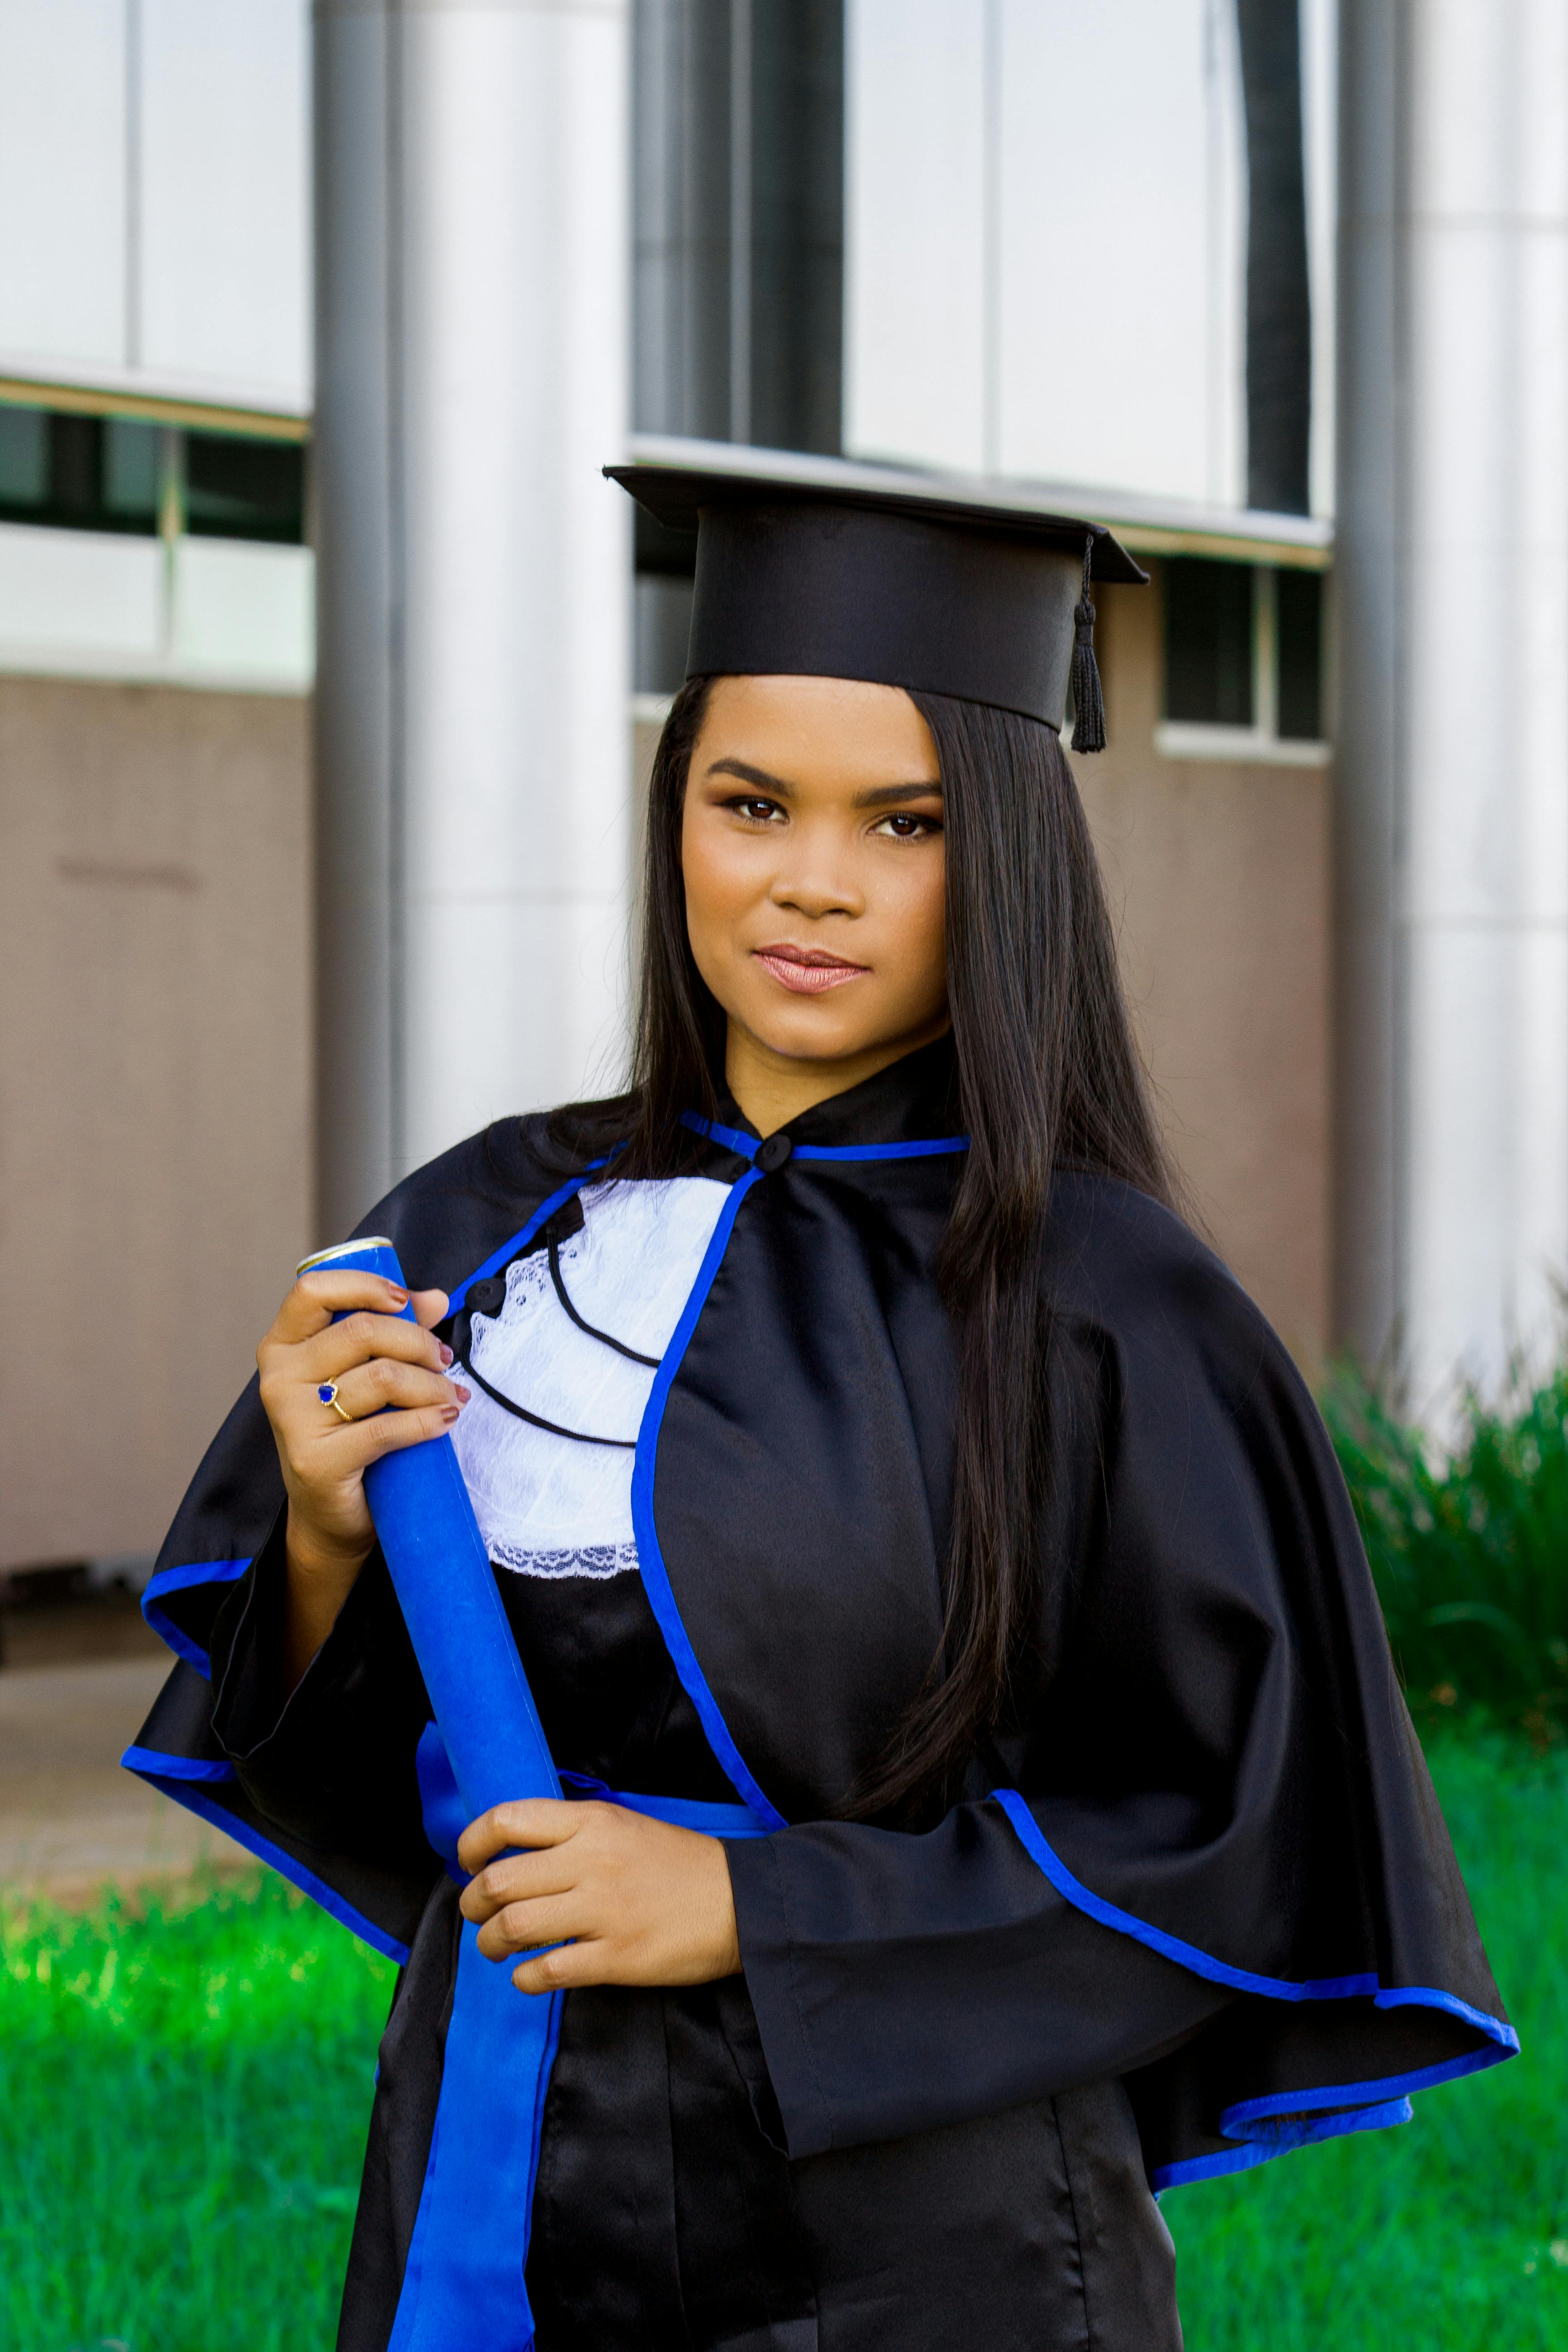 Graduation — Audie J. Photography | Graduation photography poses, Graduation  photoshoot, College graduation pictures poses